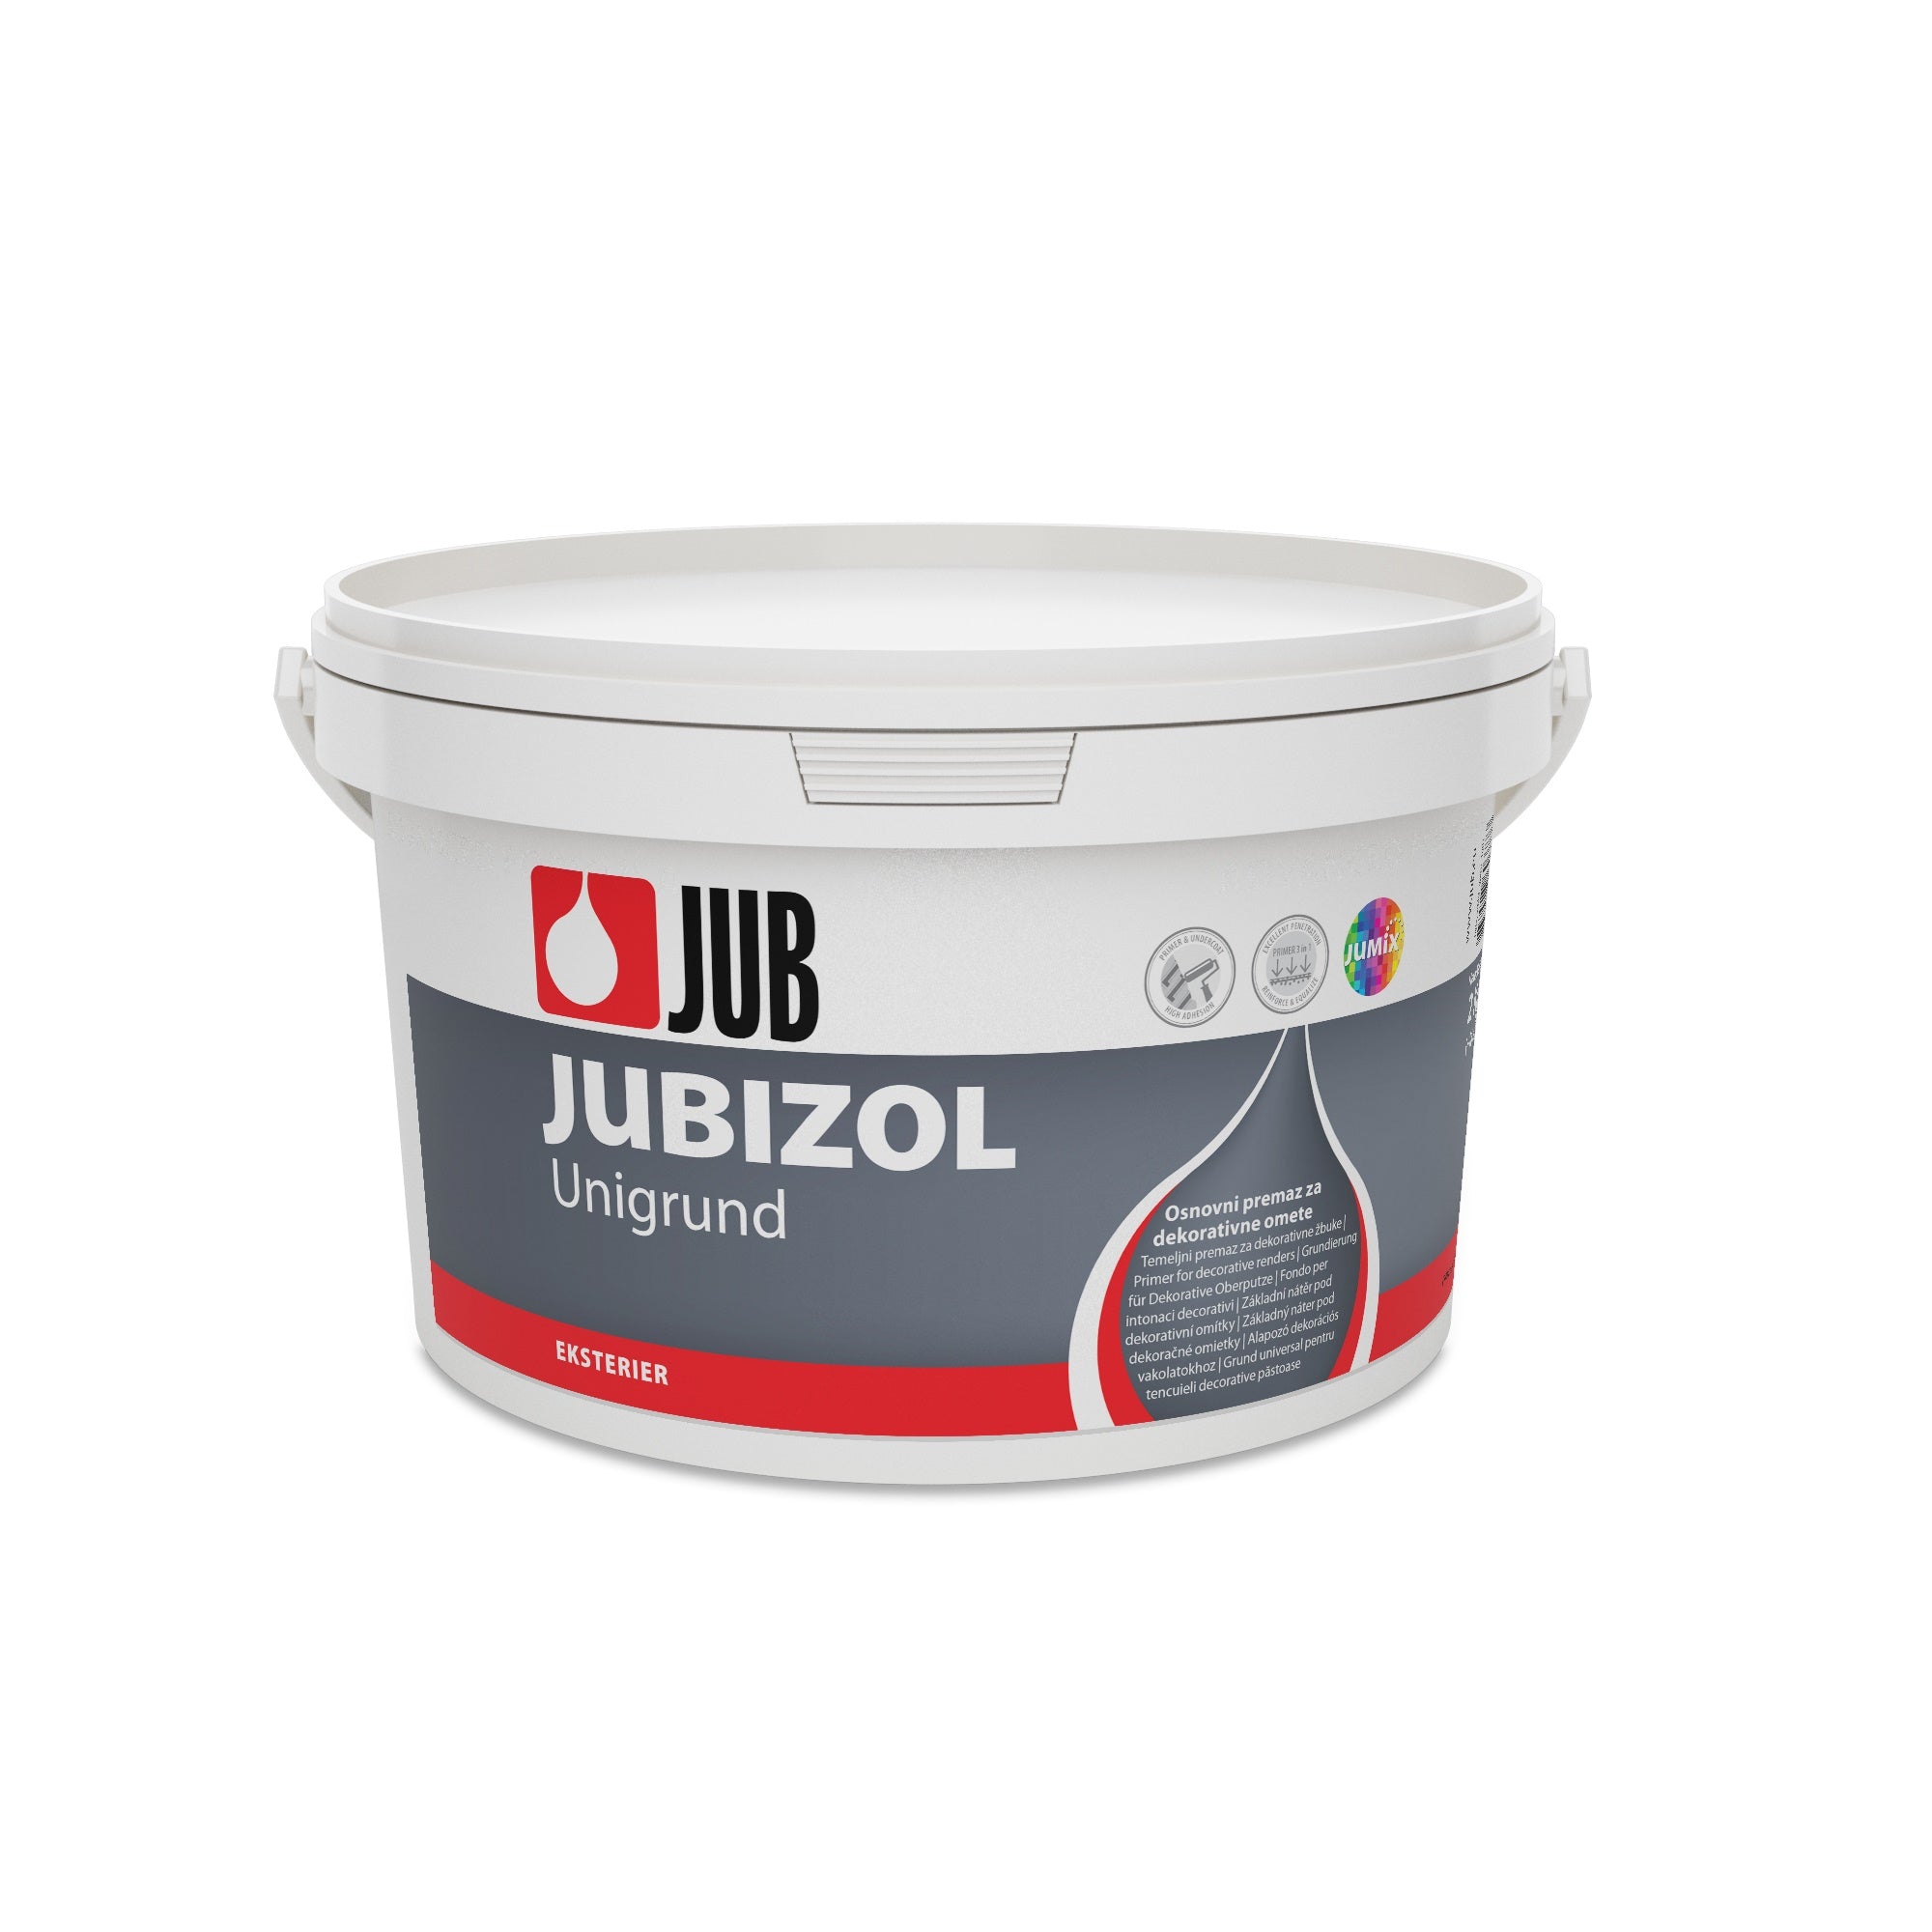 JUB JUBIZOL Unigrund bílý univerzální základní nátěr 2 kg